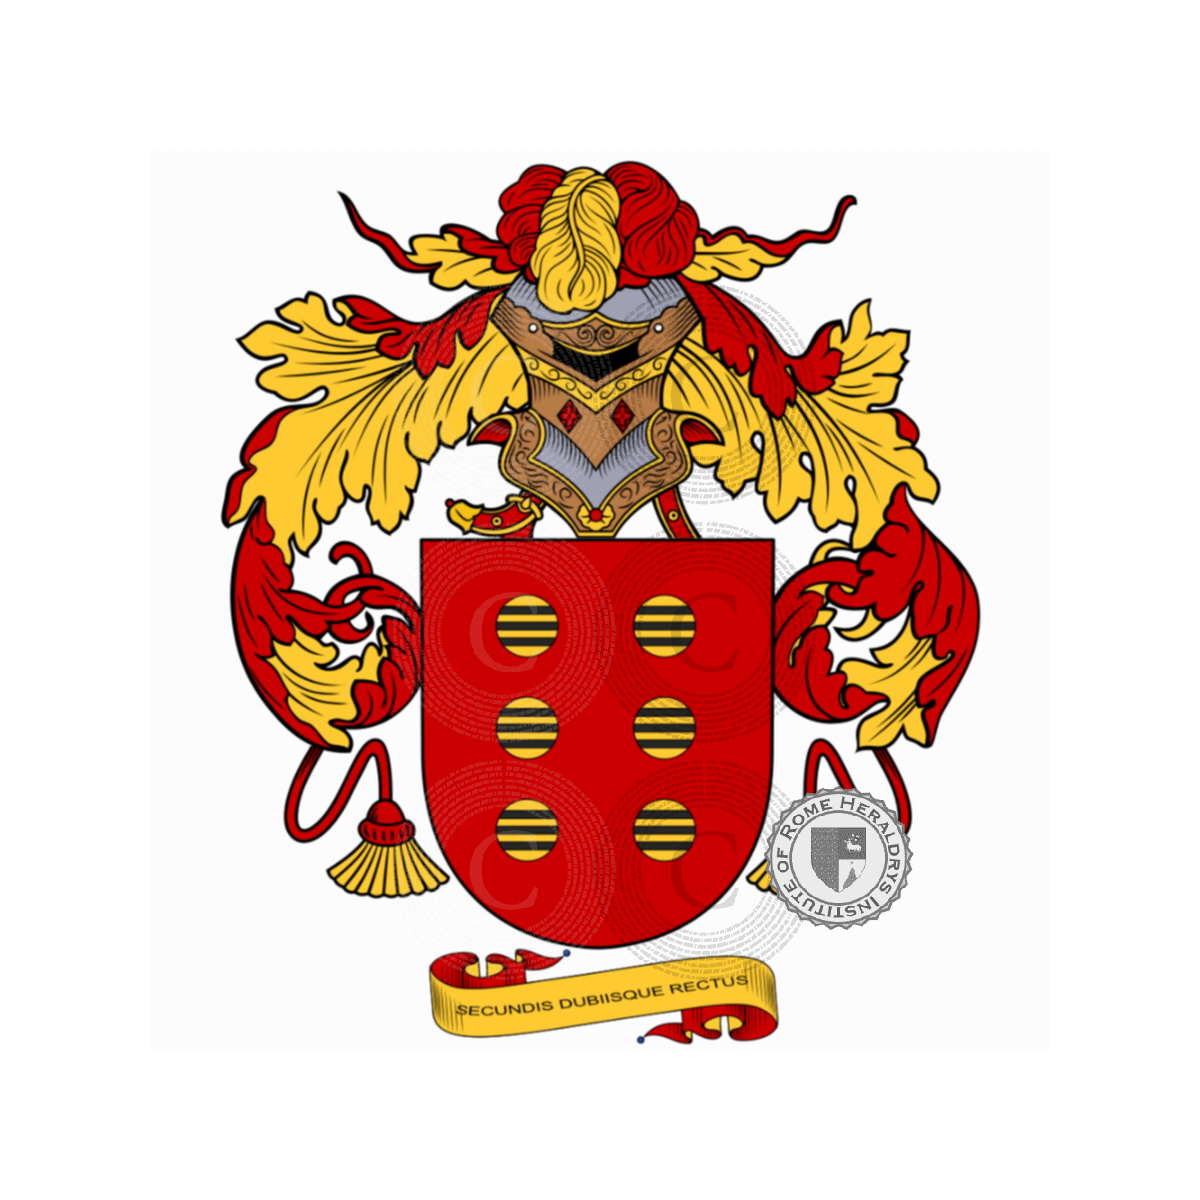 Wappen der FamilieSilva